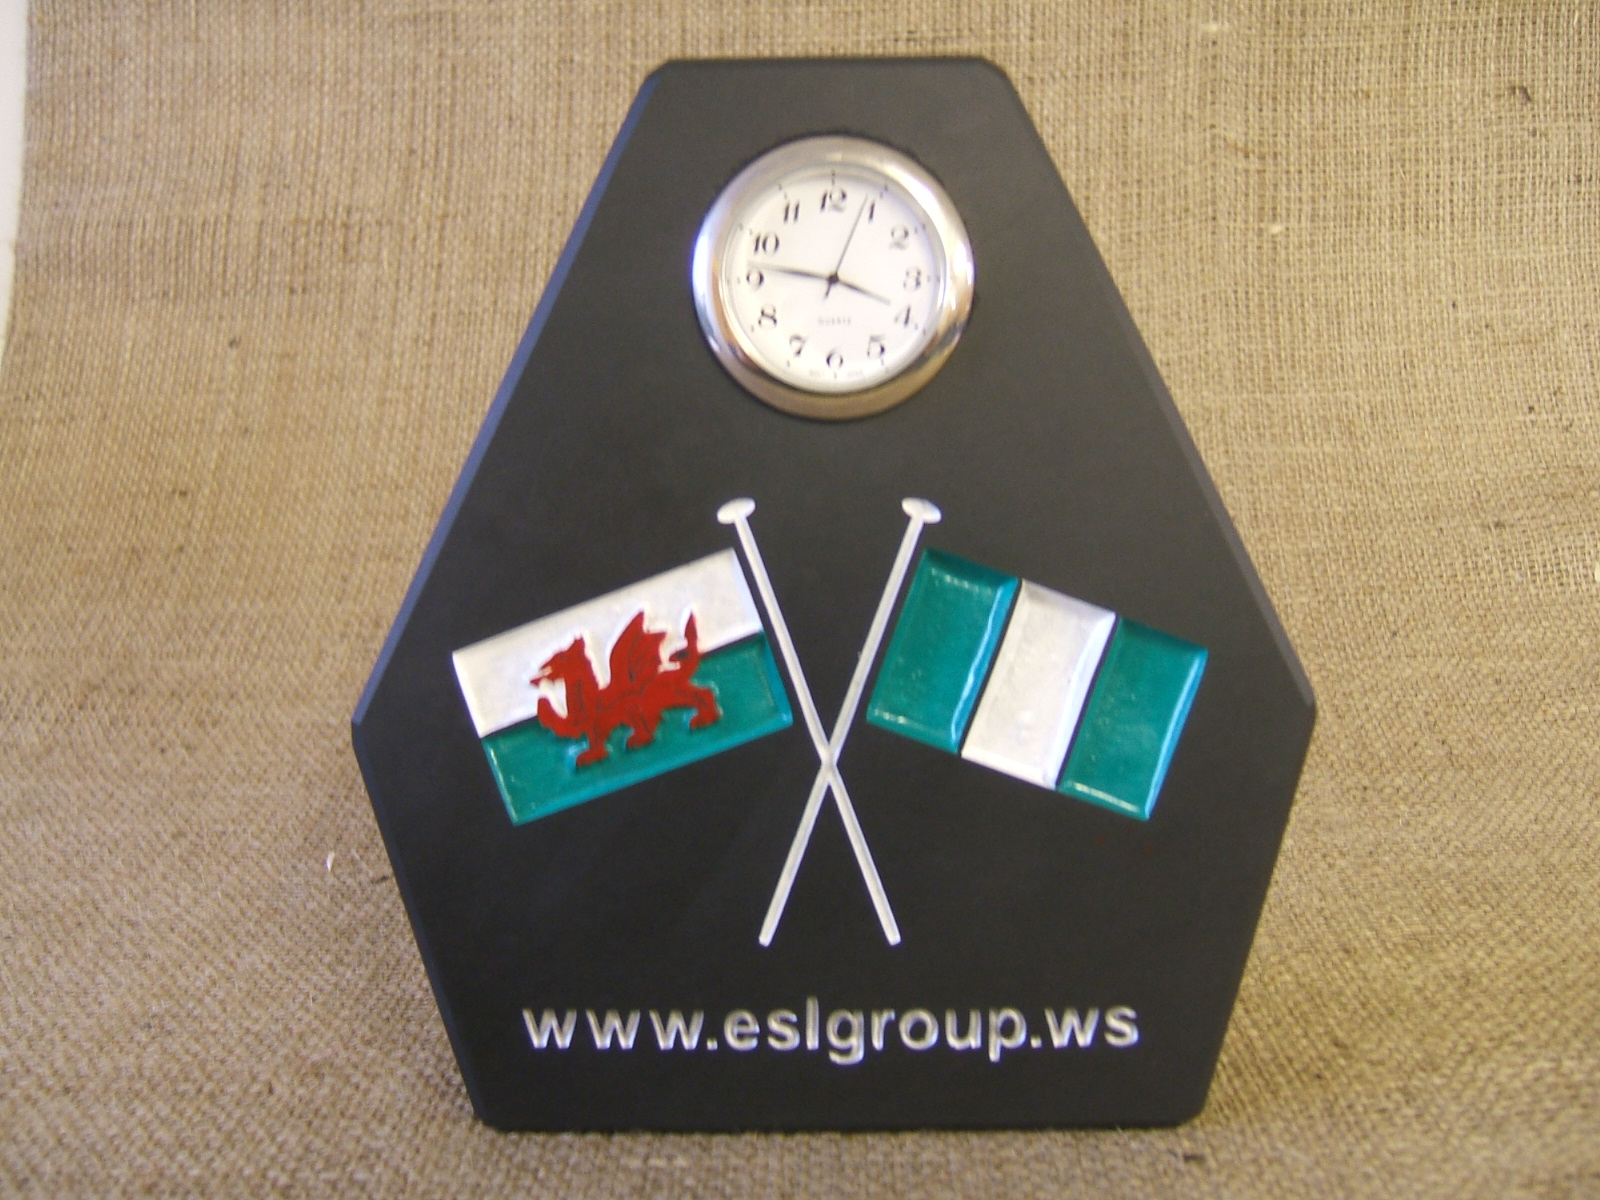 Inigo Jones supply bespoke clocks for Nigeria